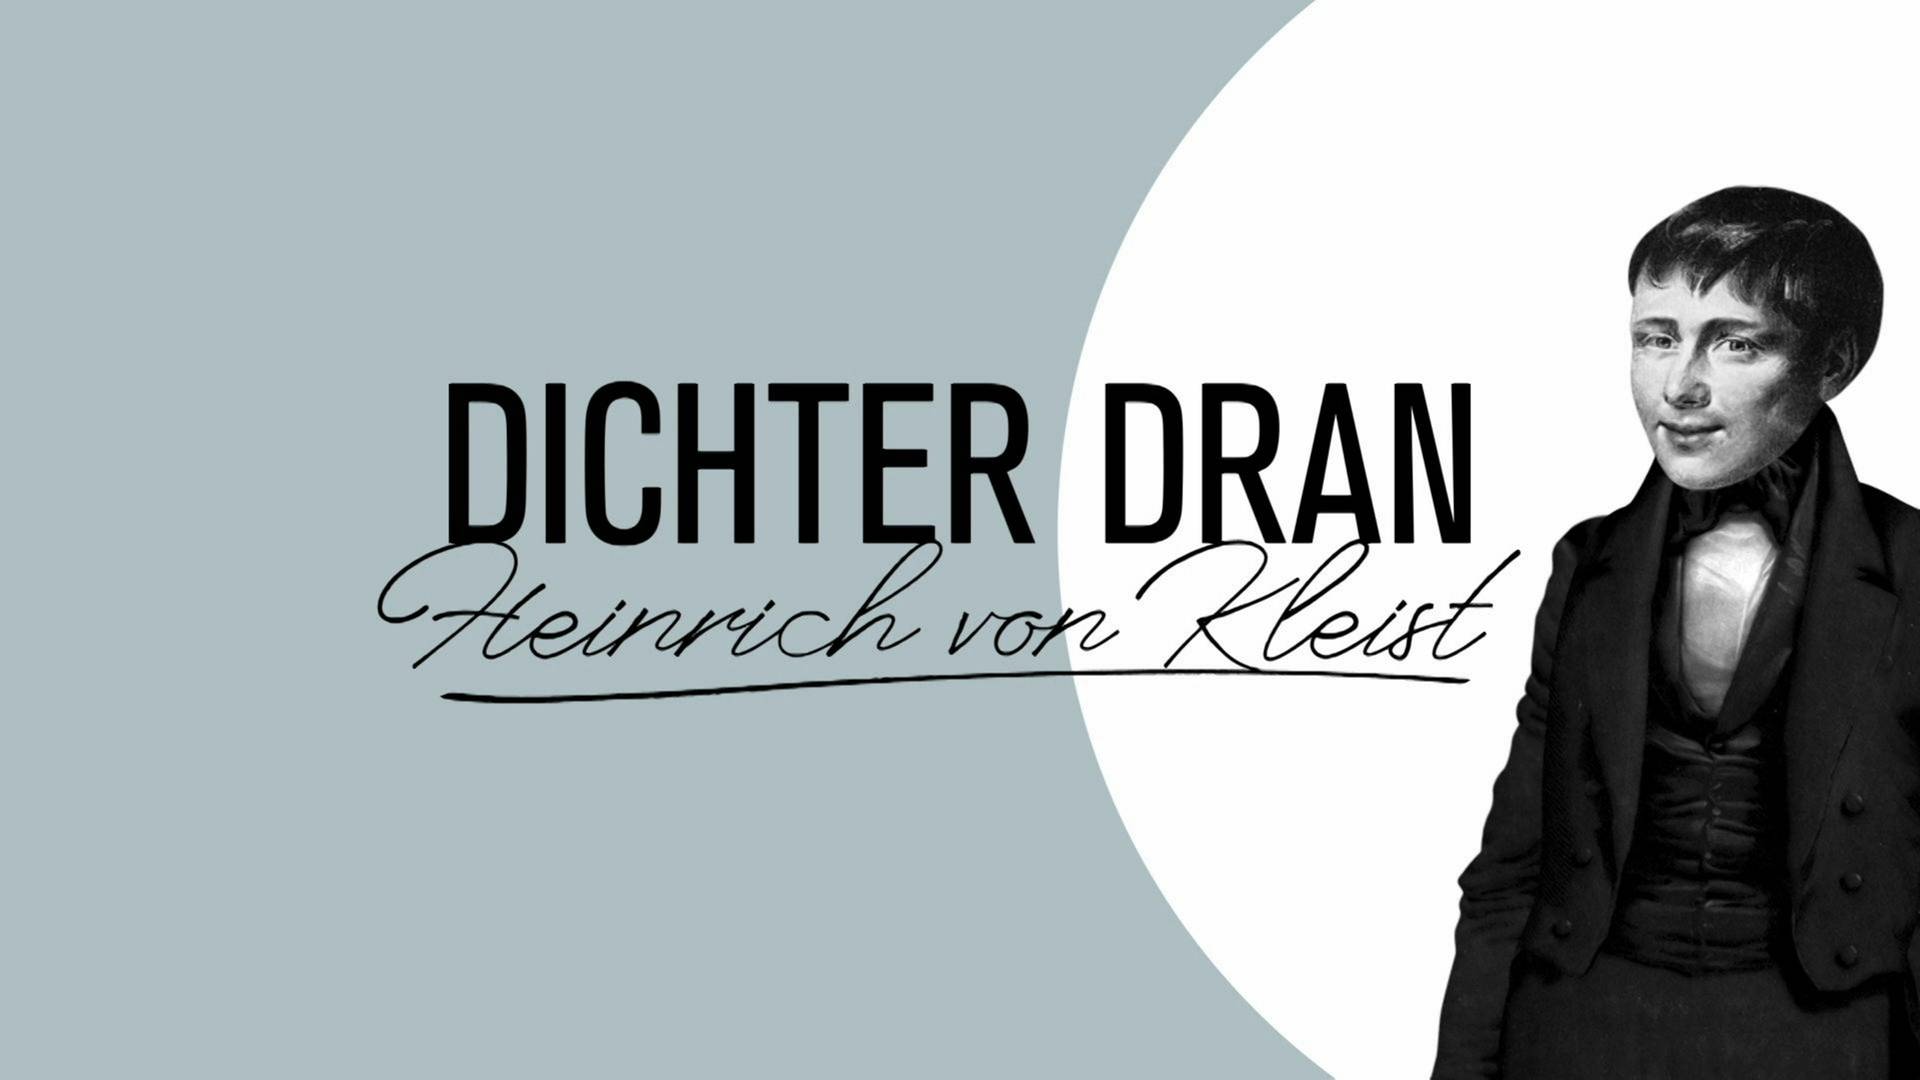 Schwarz weiß Zeichnung von Heinrich von Kleist, daneben der Schriftzug "DICHTER DRAN - Heinrich von Kleist".